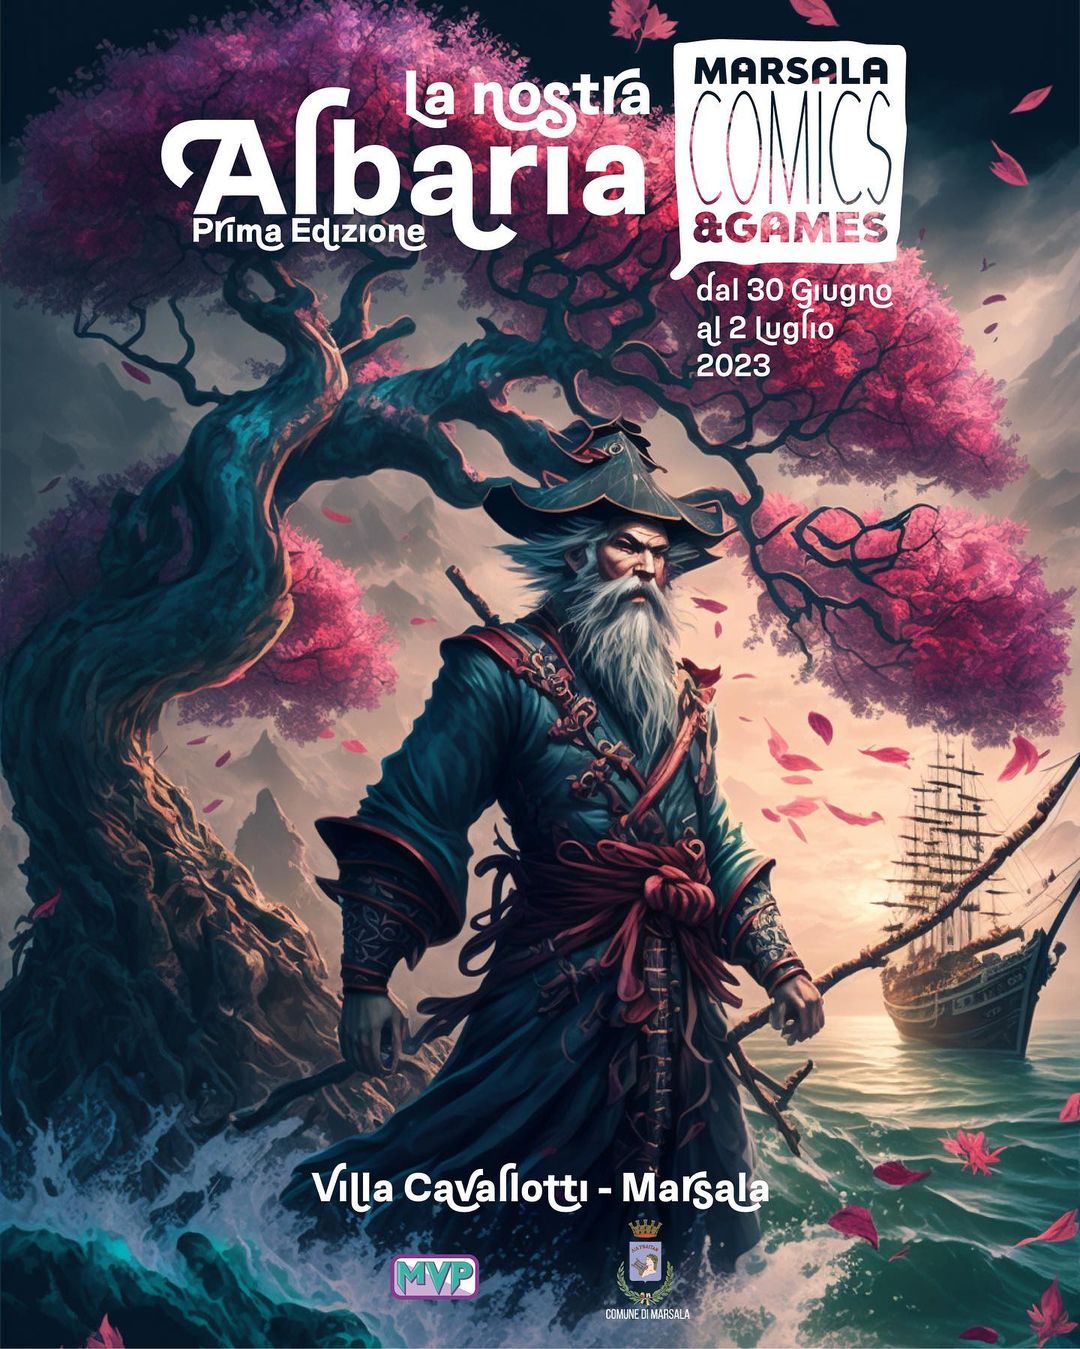 Marsala Comics & Games 2023: La nostra Albaria